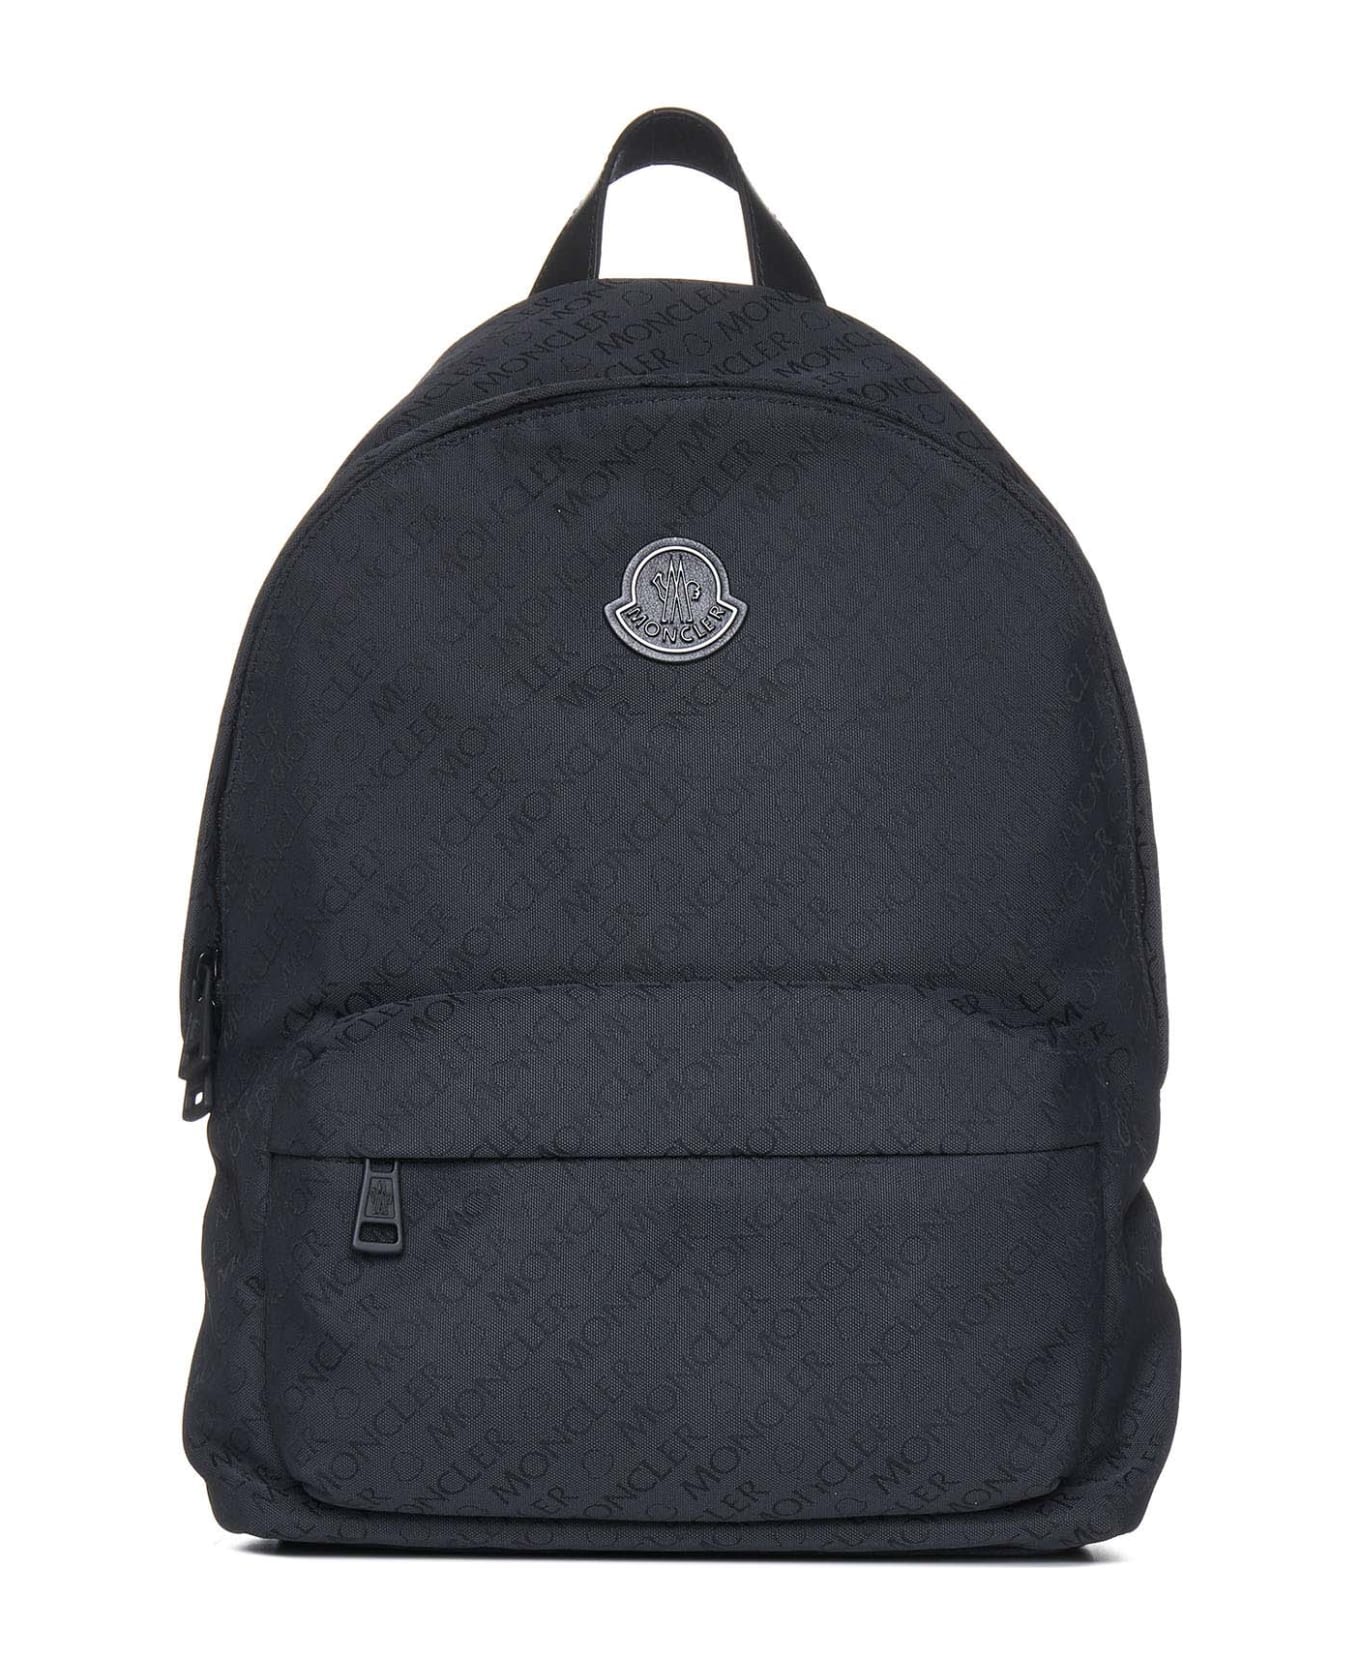 Moncler Backpack - Black